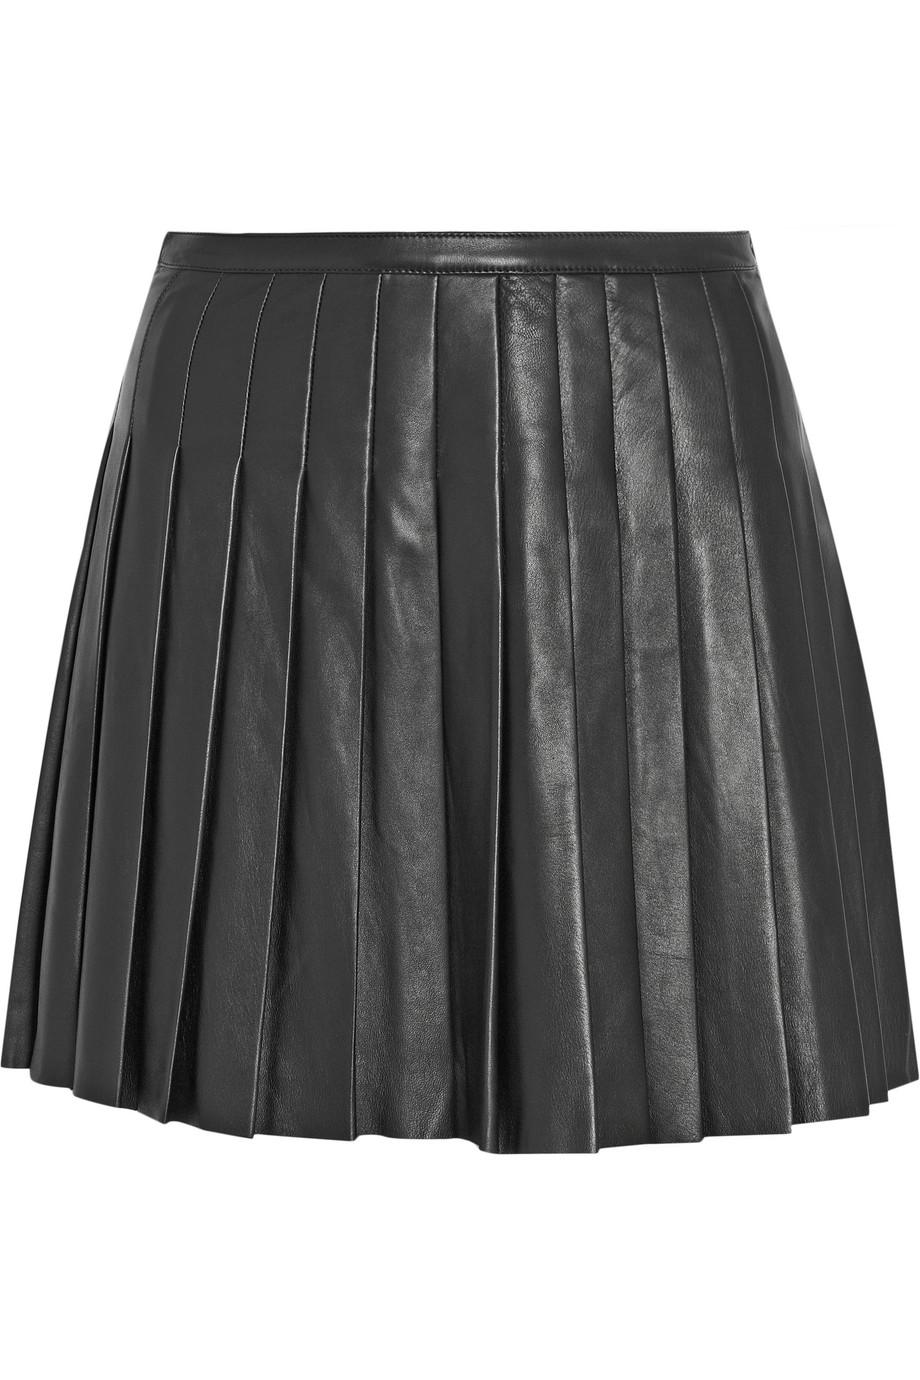 Belstaff Kaddington Pleated Leather Mini Skirt | ModeSens